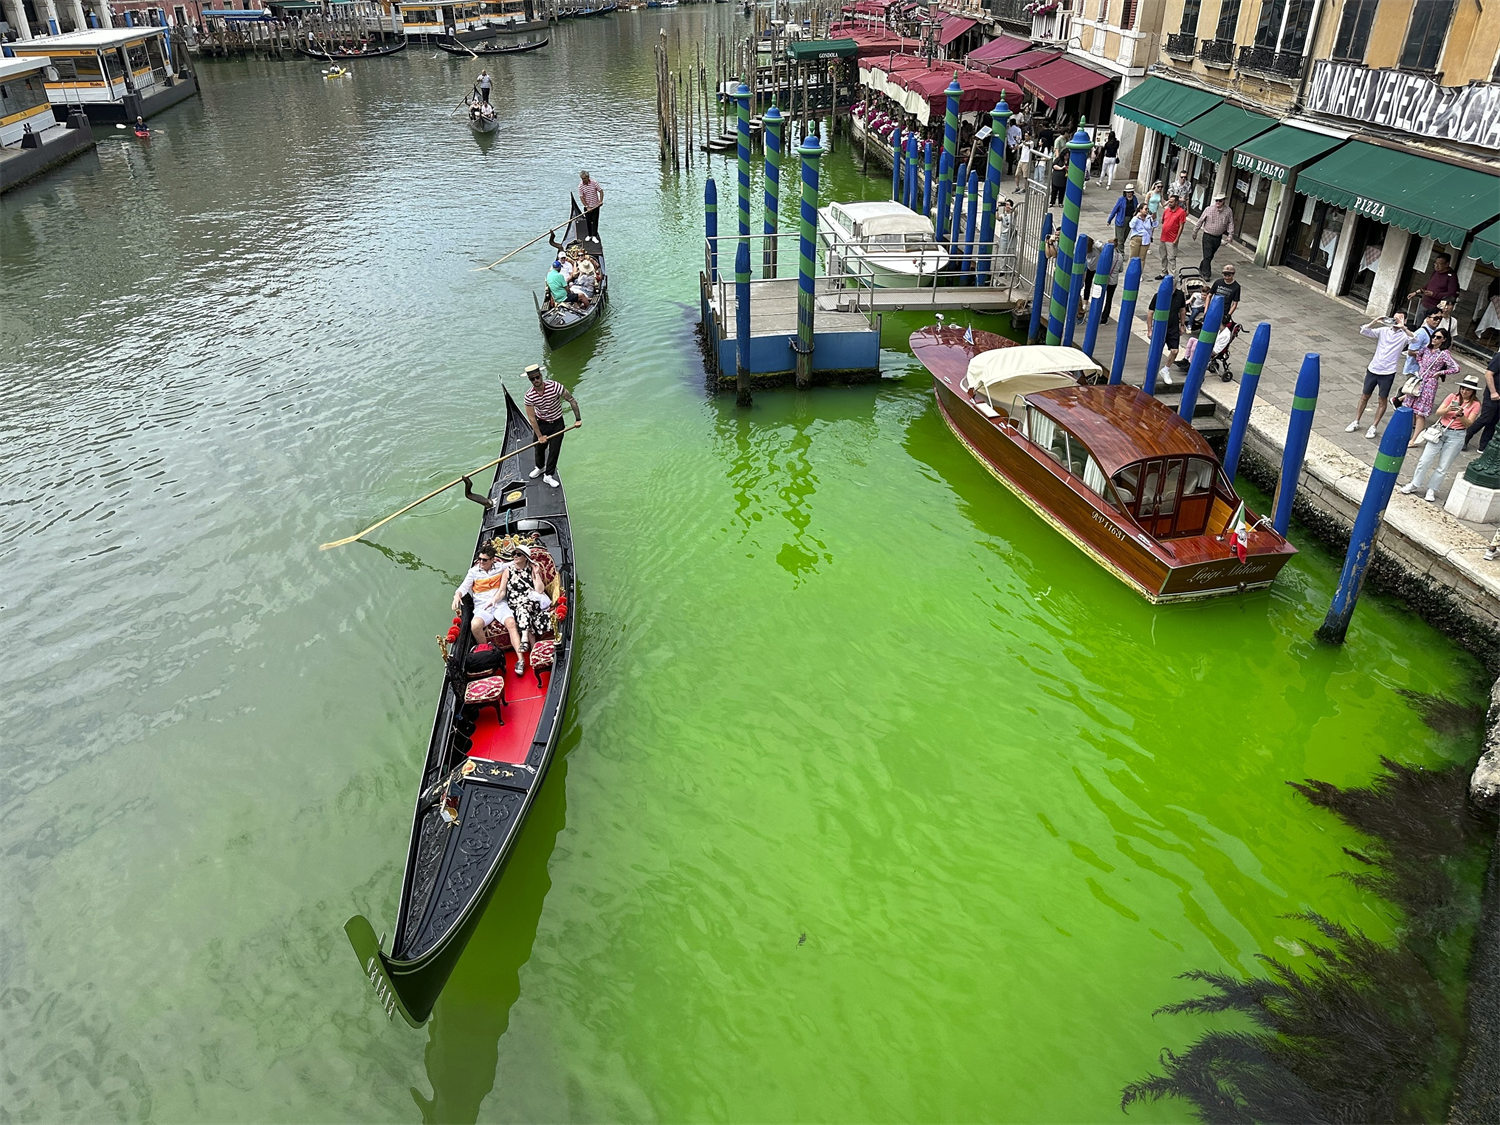 El Gran Canal de Venecia se tiñe de verde fluorescente